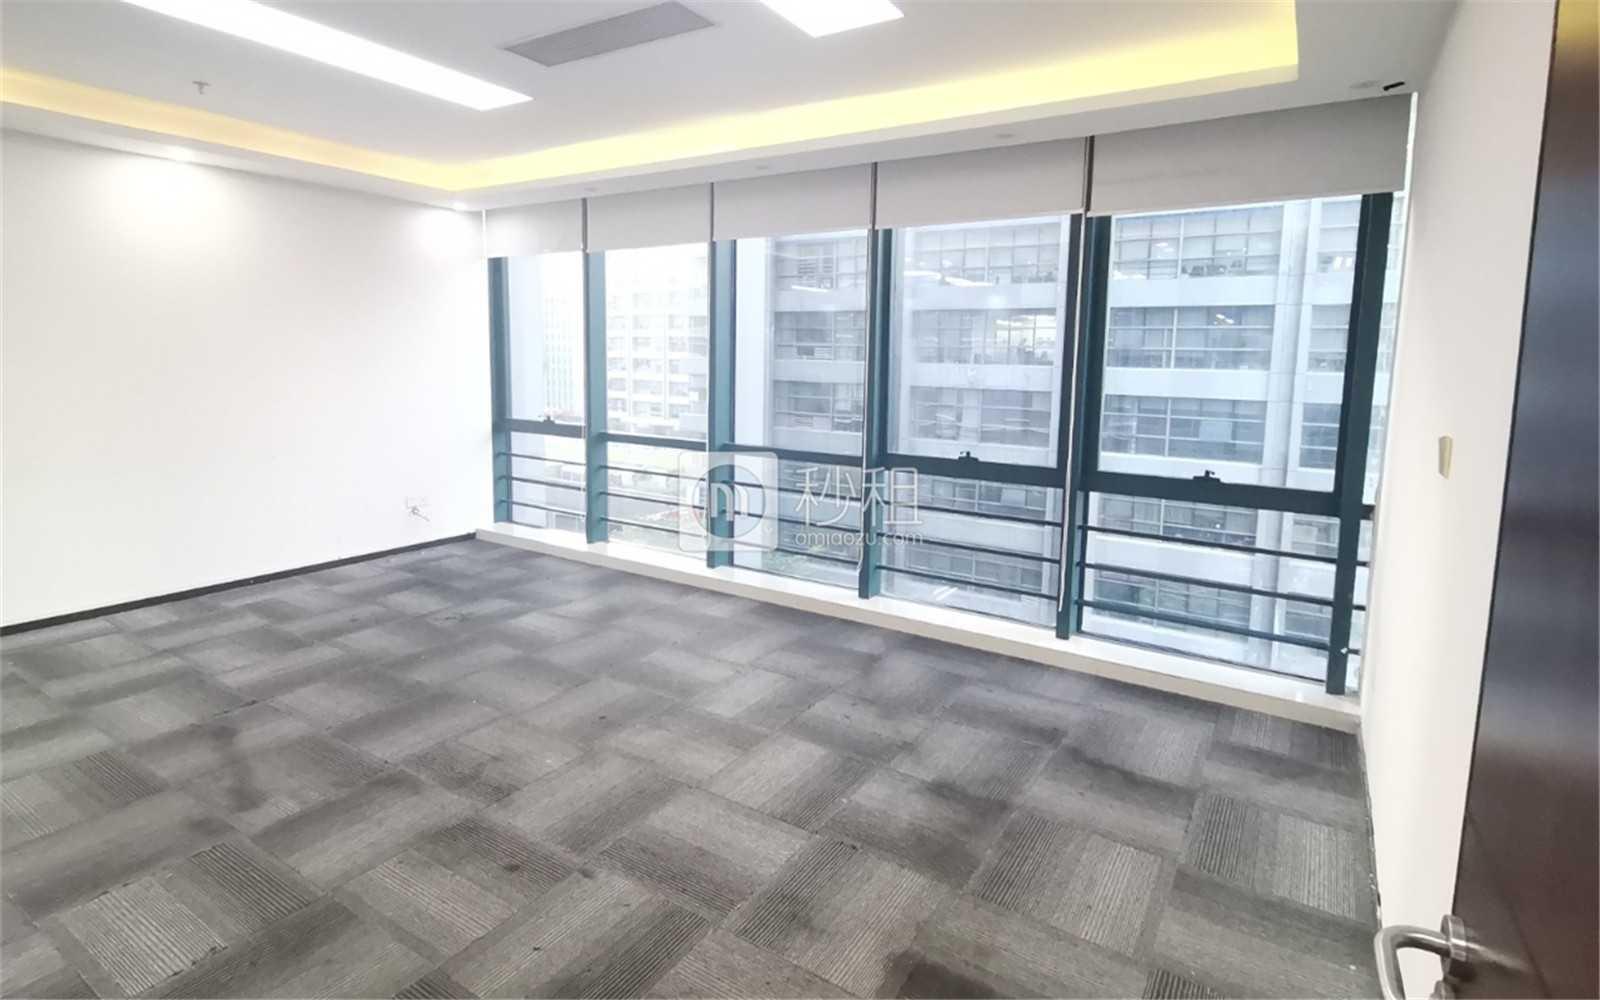 盛唐大厦写字楼出租598平米精装办公室118元/m².月